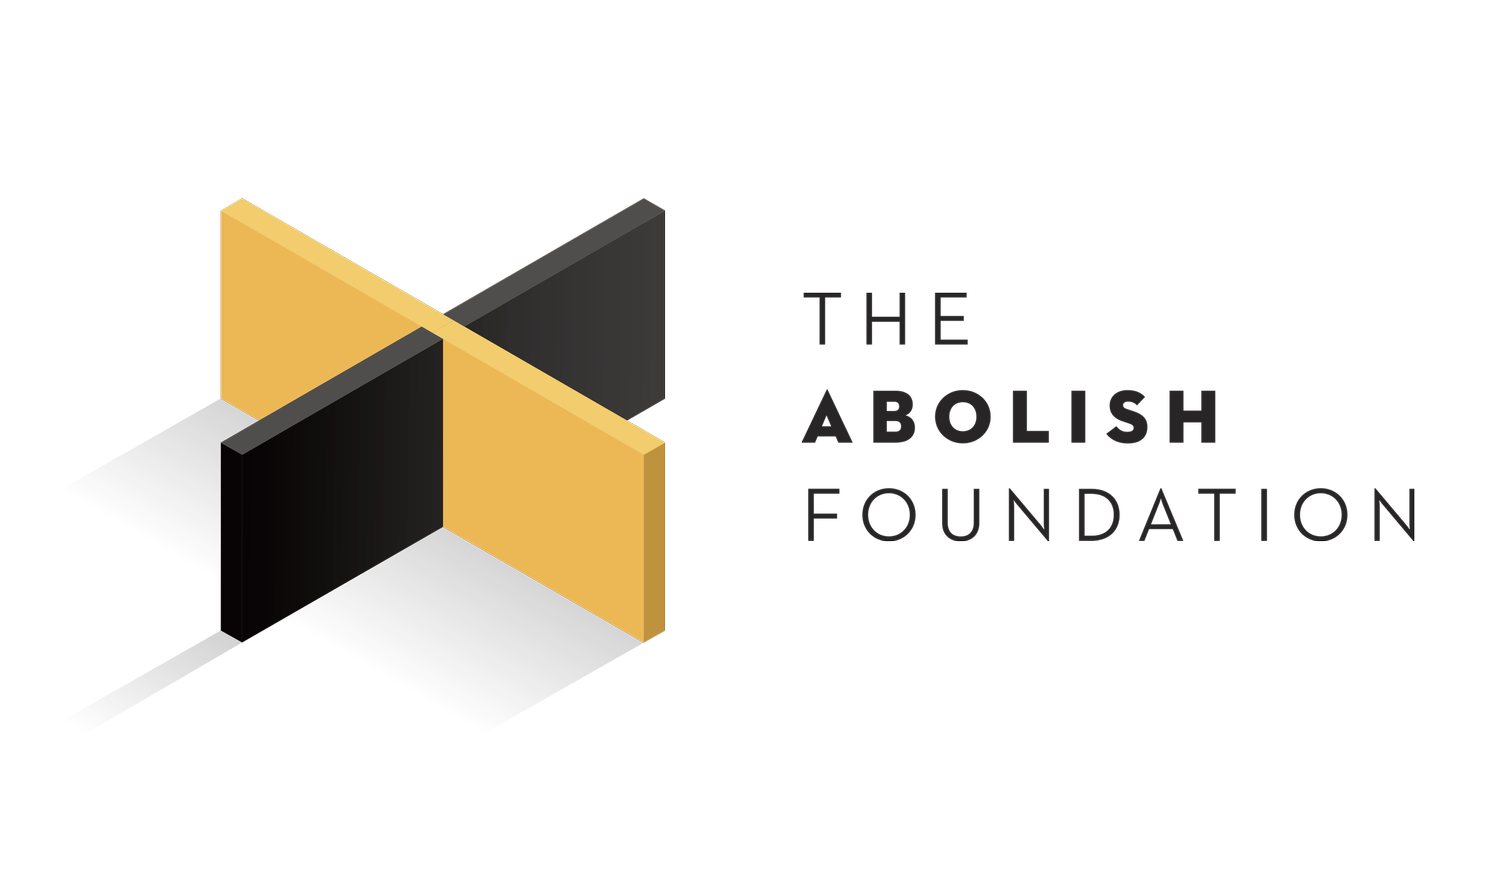 The Abolish Foundation